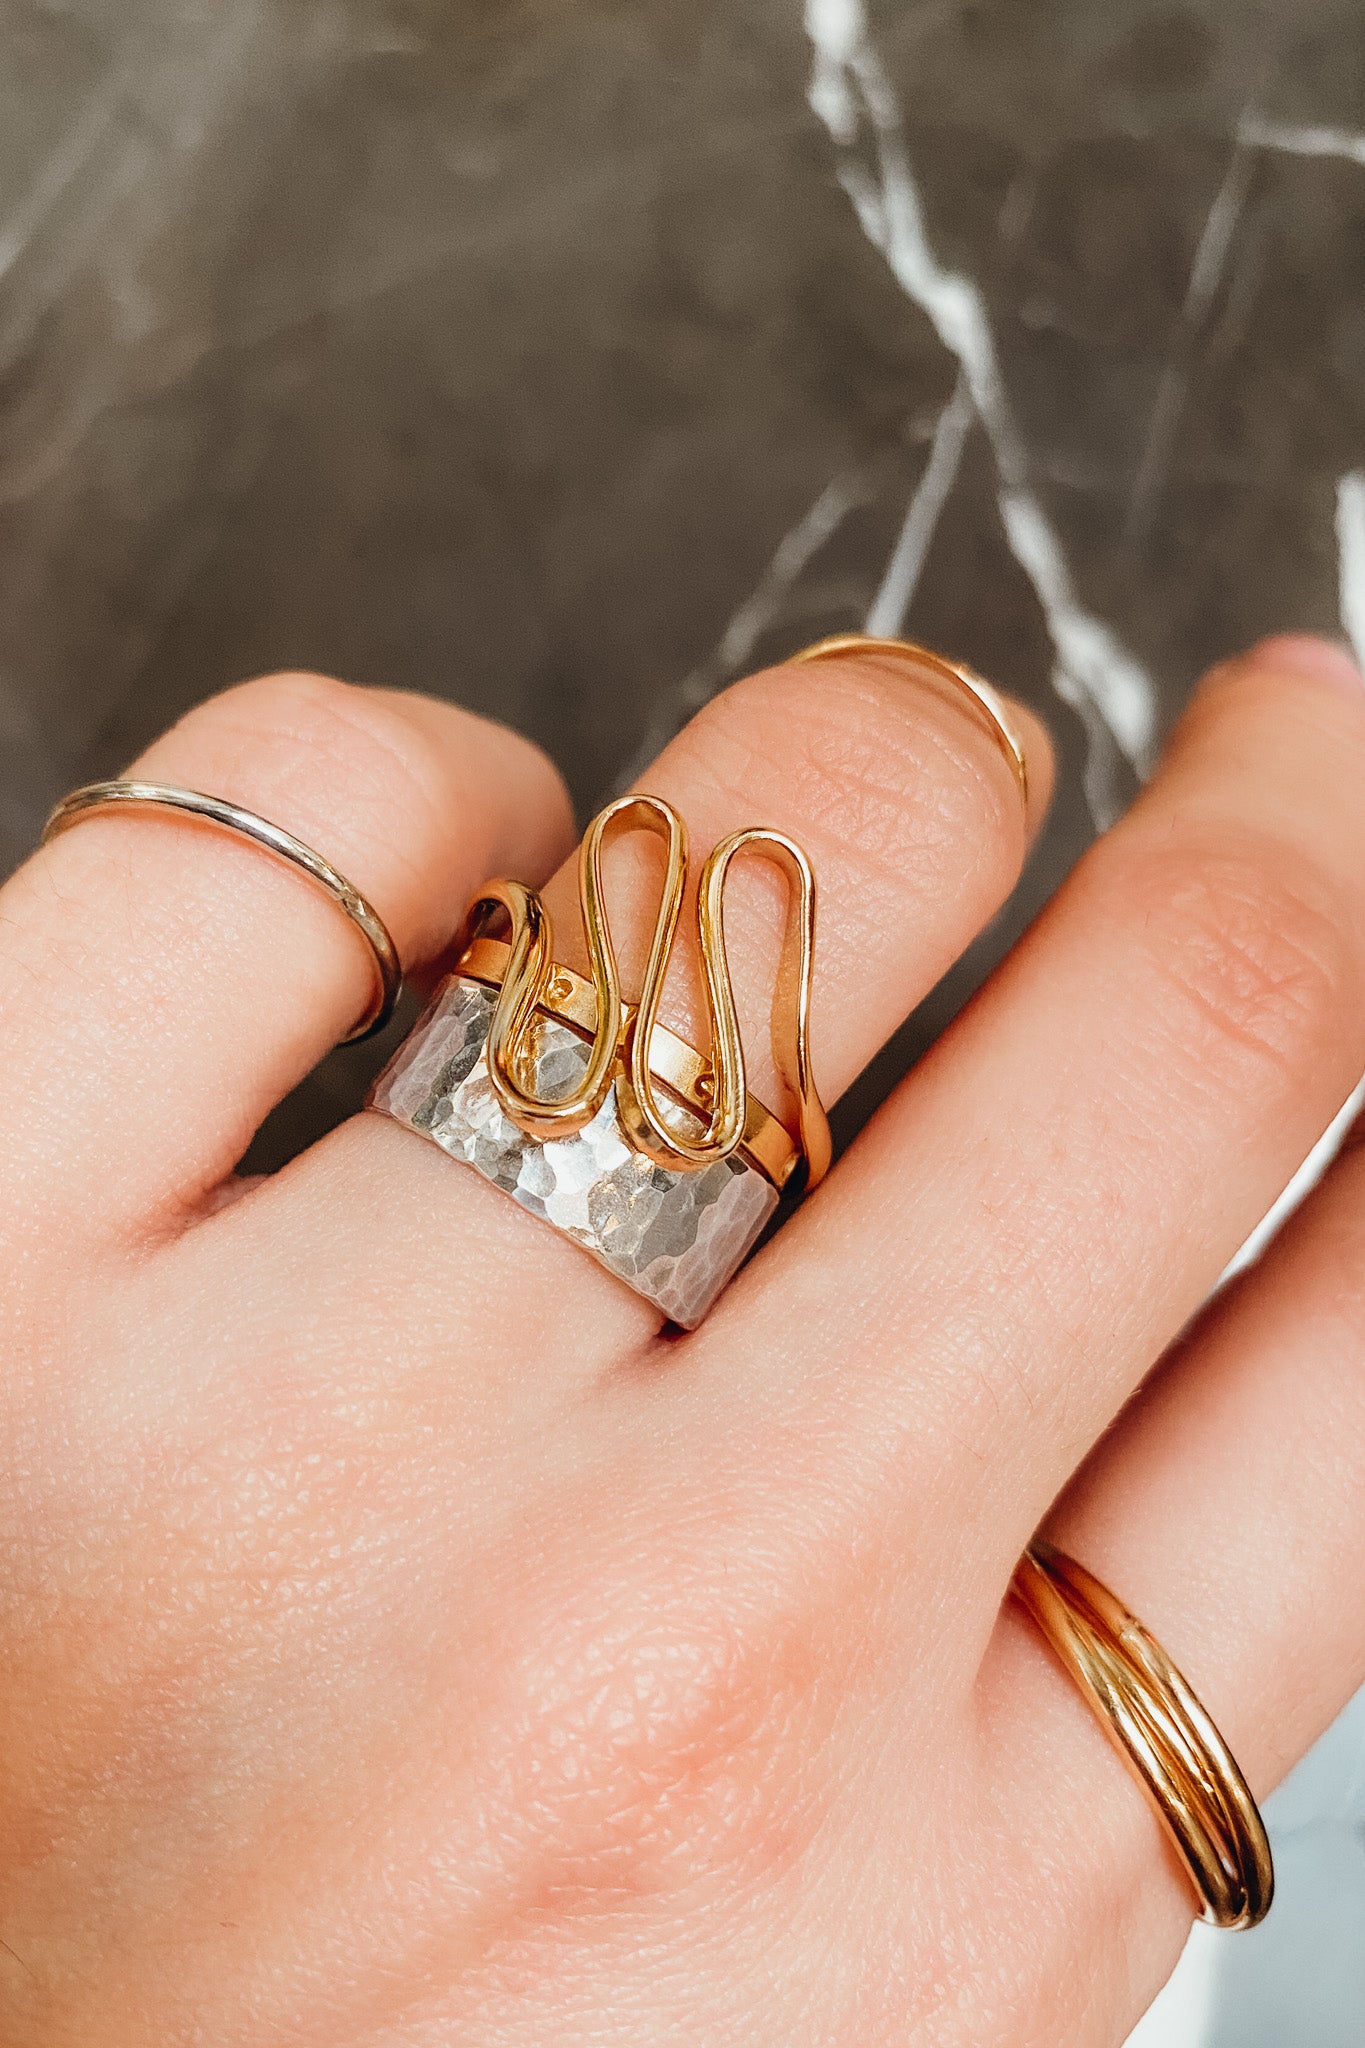 Boutonierre ring splint for Ehlers Danlos | Medical jewelry, Rings, Ehlers  danlos